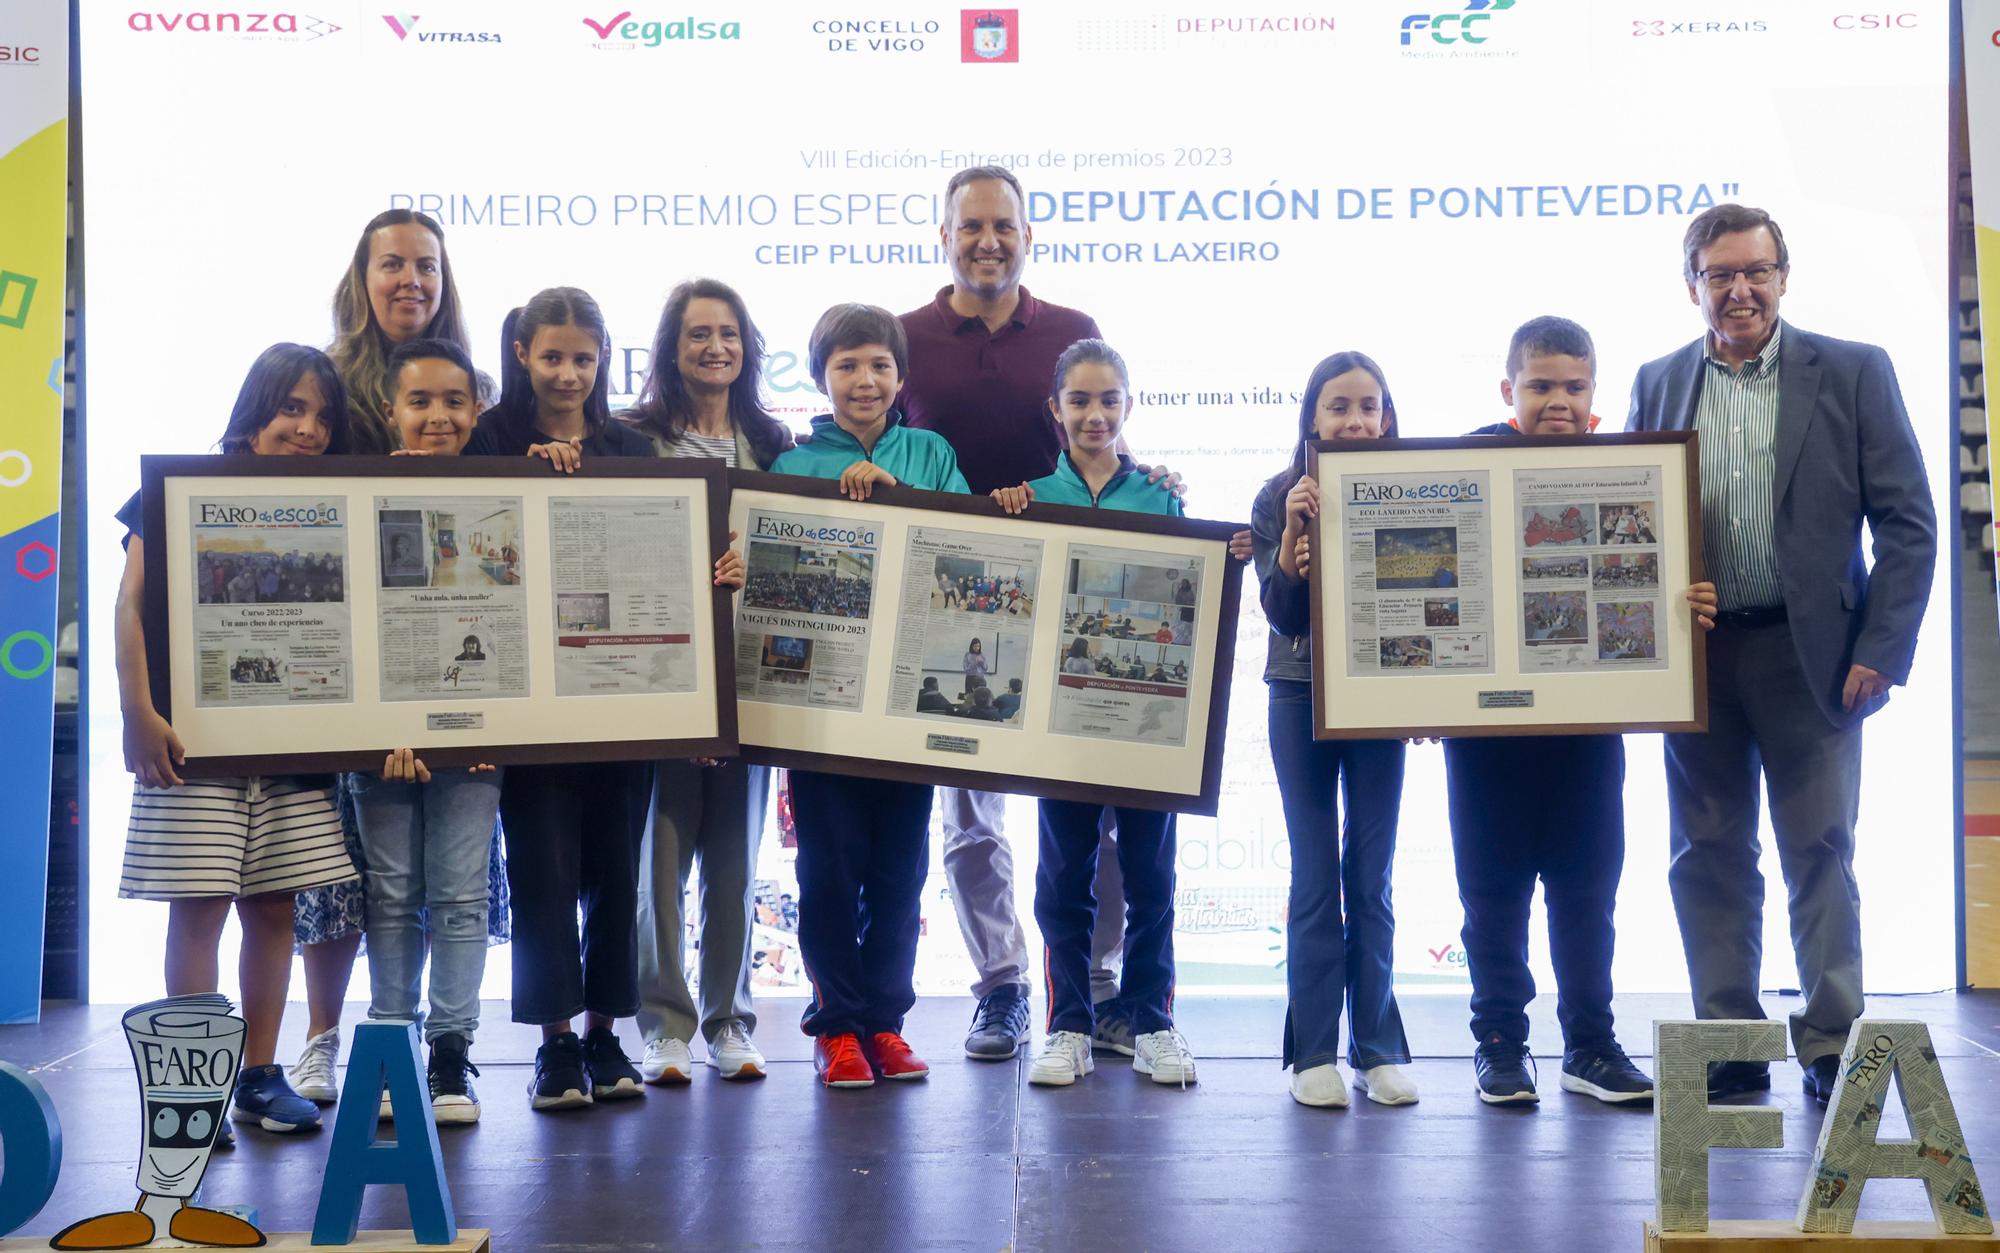 Premio Especial de la Deputación de Pontevedra: Pintor Laxeiro, San Martiño y Nuestra Señora de la Esperanza